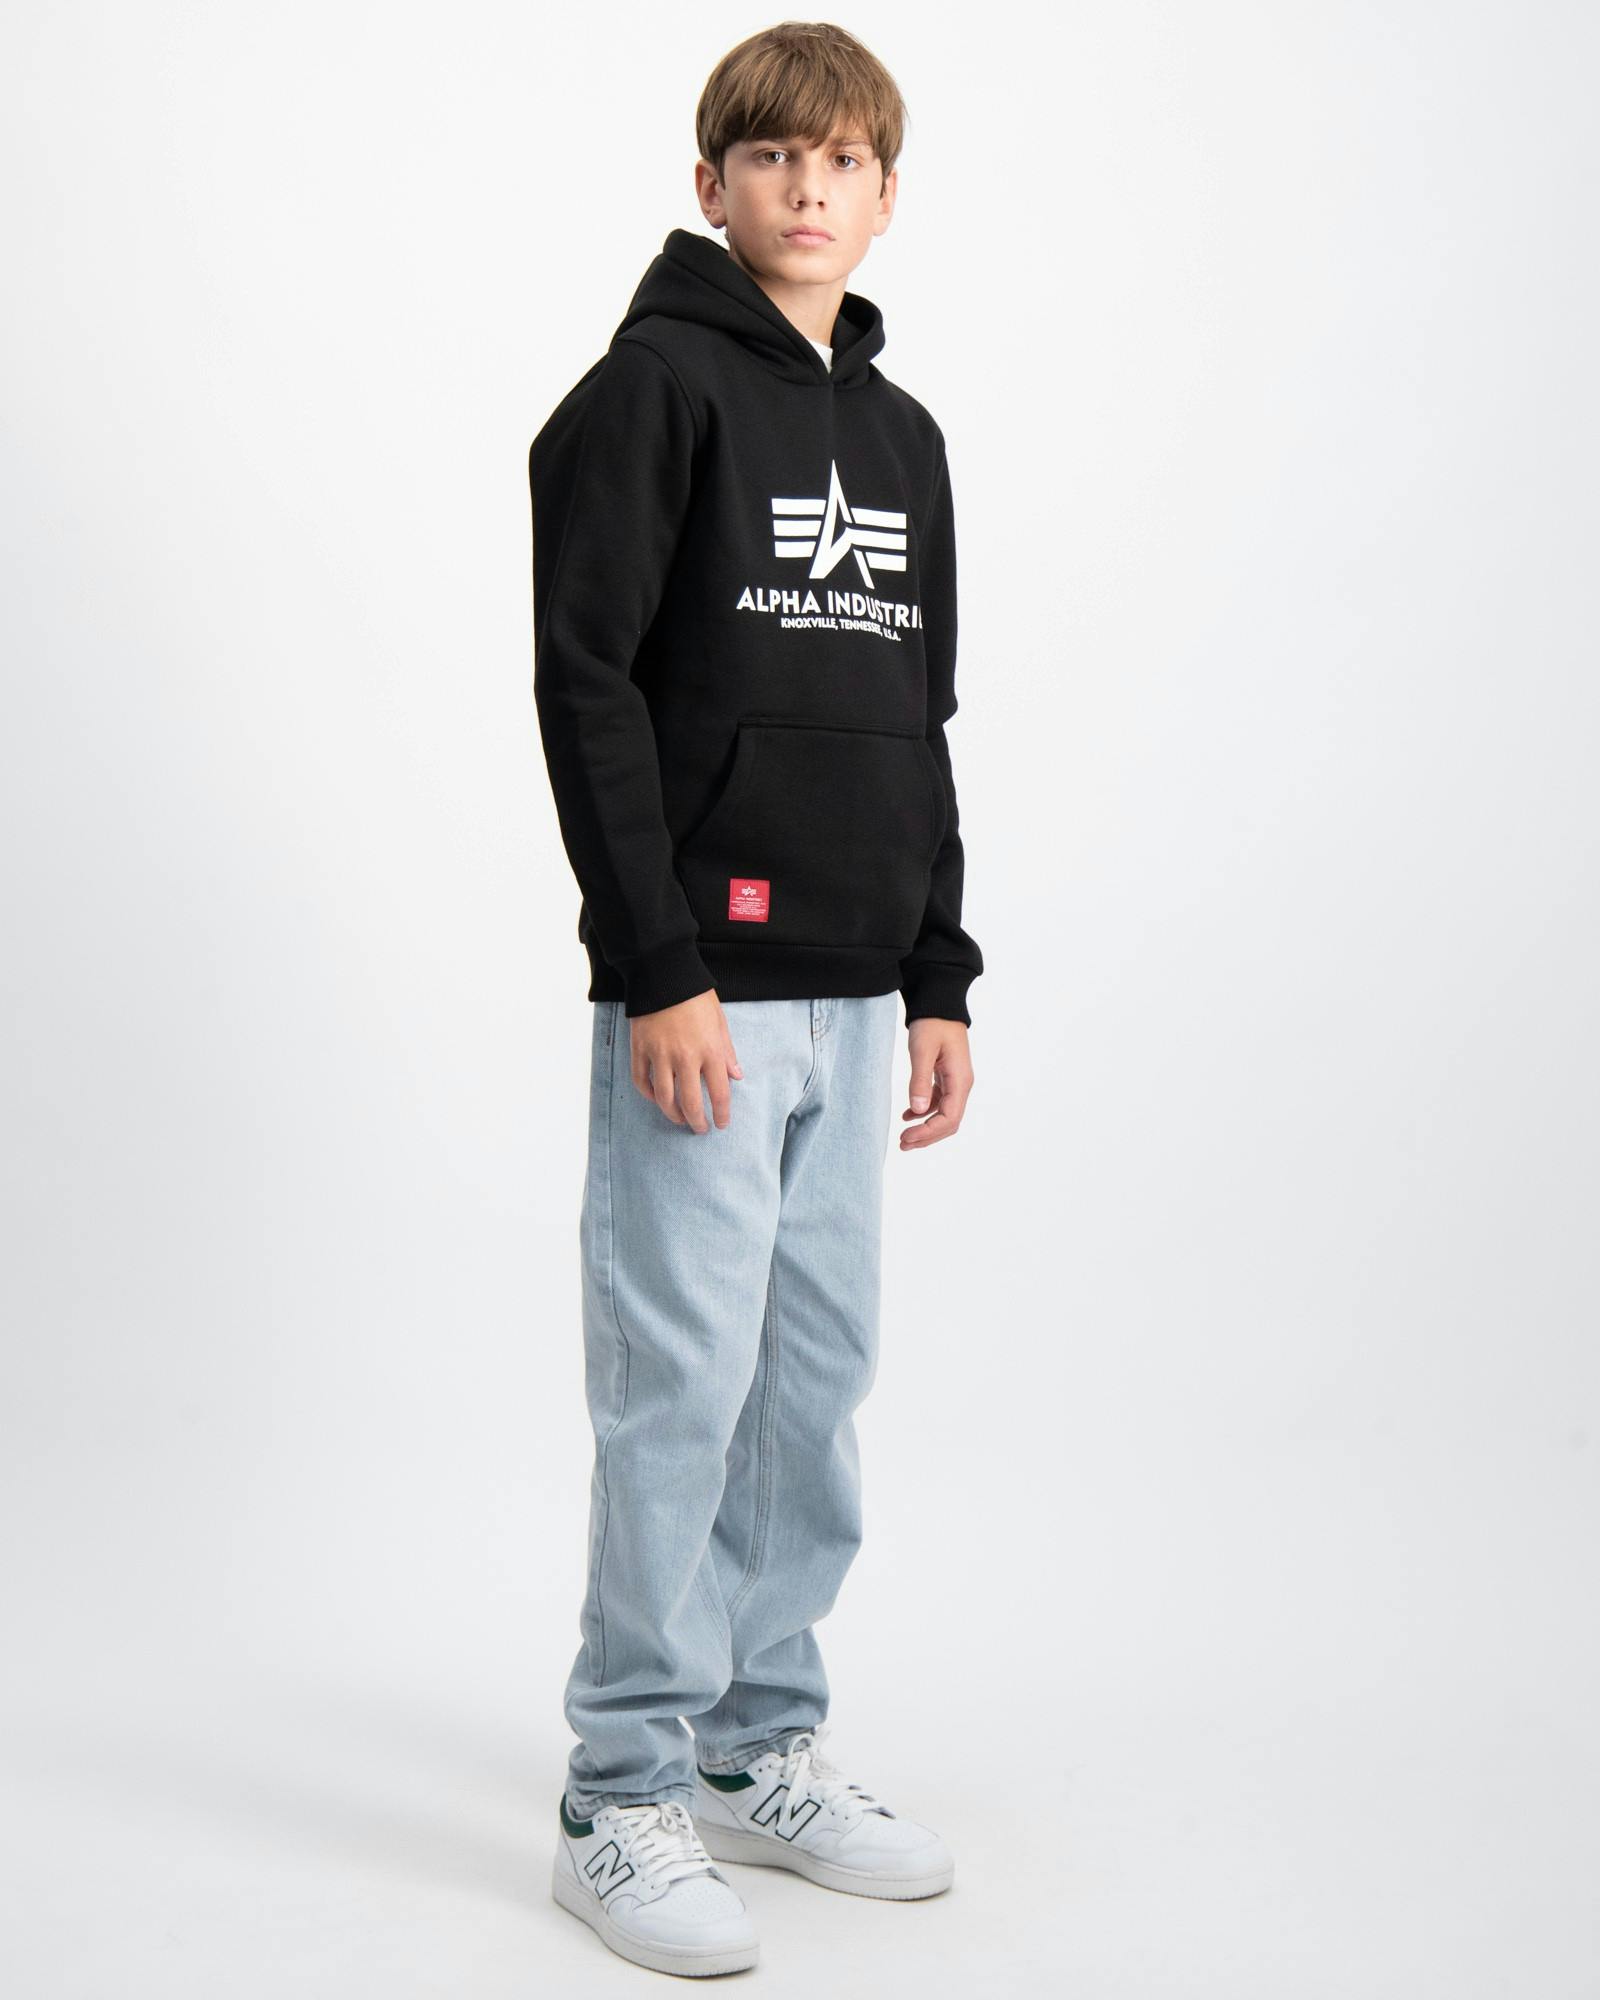 Schwarz Basic Hoody Kids/Teens für Jungen | Kids Brand Store